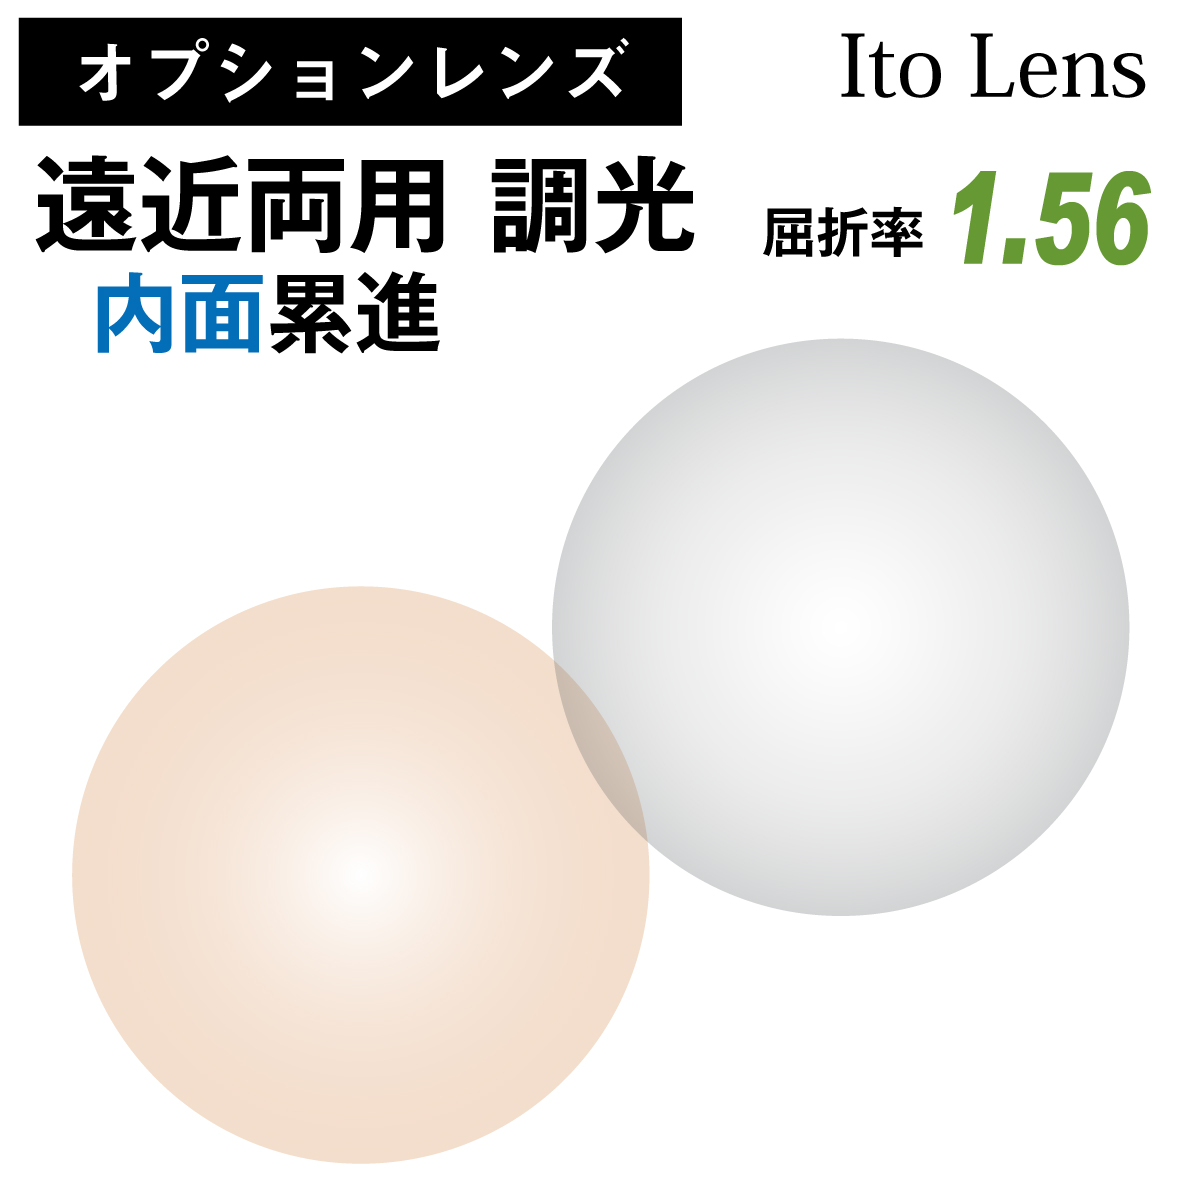 イトーレンズ 遠近両用 内面累進 調光 グレー ブラウン レンズ 屈折率 1.56 日本製 （2枚1組） Ito Lens メガネ 眼鏡 境目なし UVカット 紫外線カット カラーレンズ op-ito